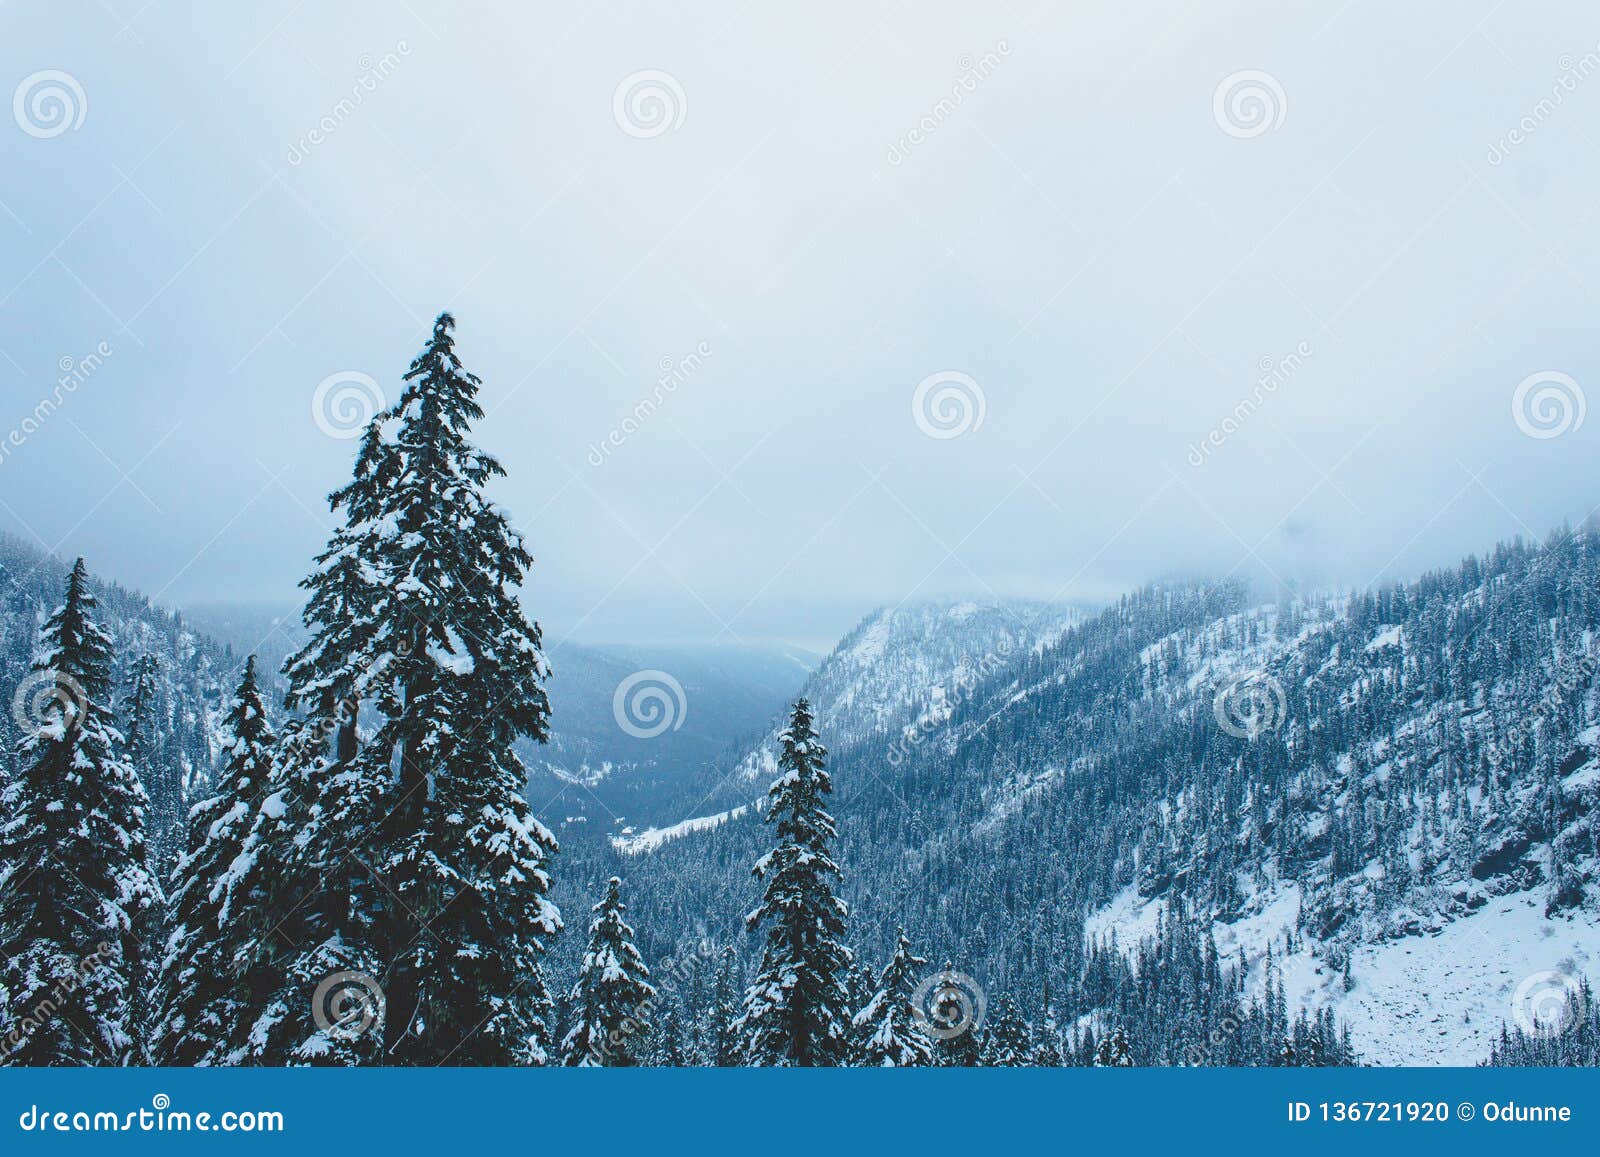 Pine Trees In Valley, Snow Lake, Washington Stock Photo ...